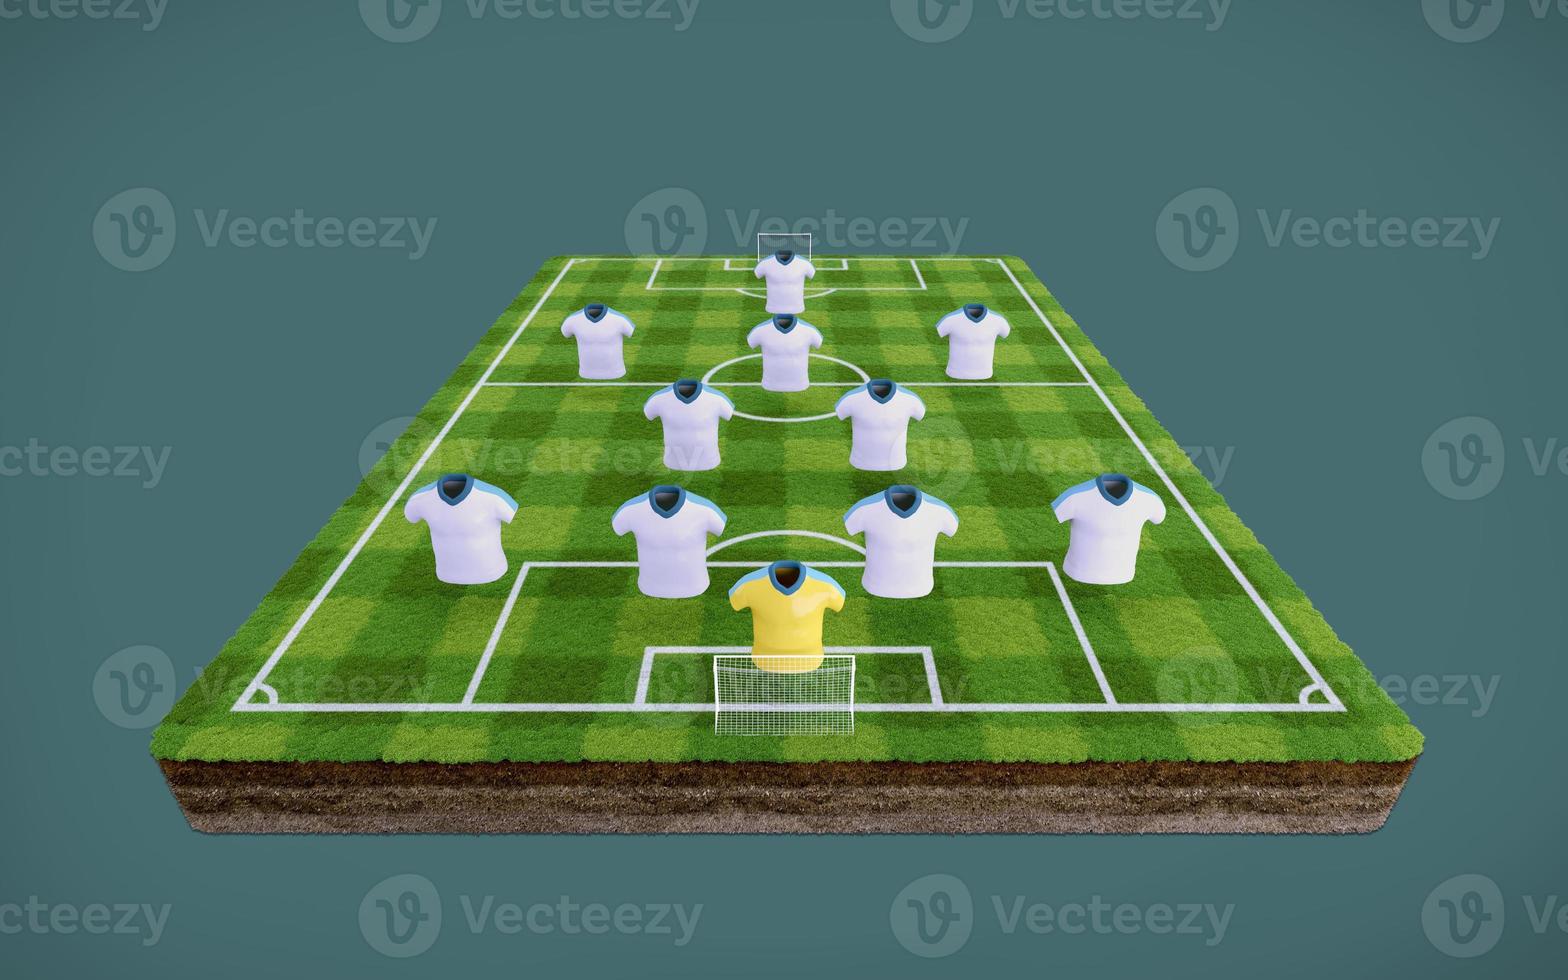 campo da calcio e magliette da calcio vuote con 4-2-3-1 formation.3d rendering foto